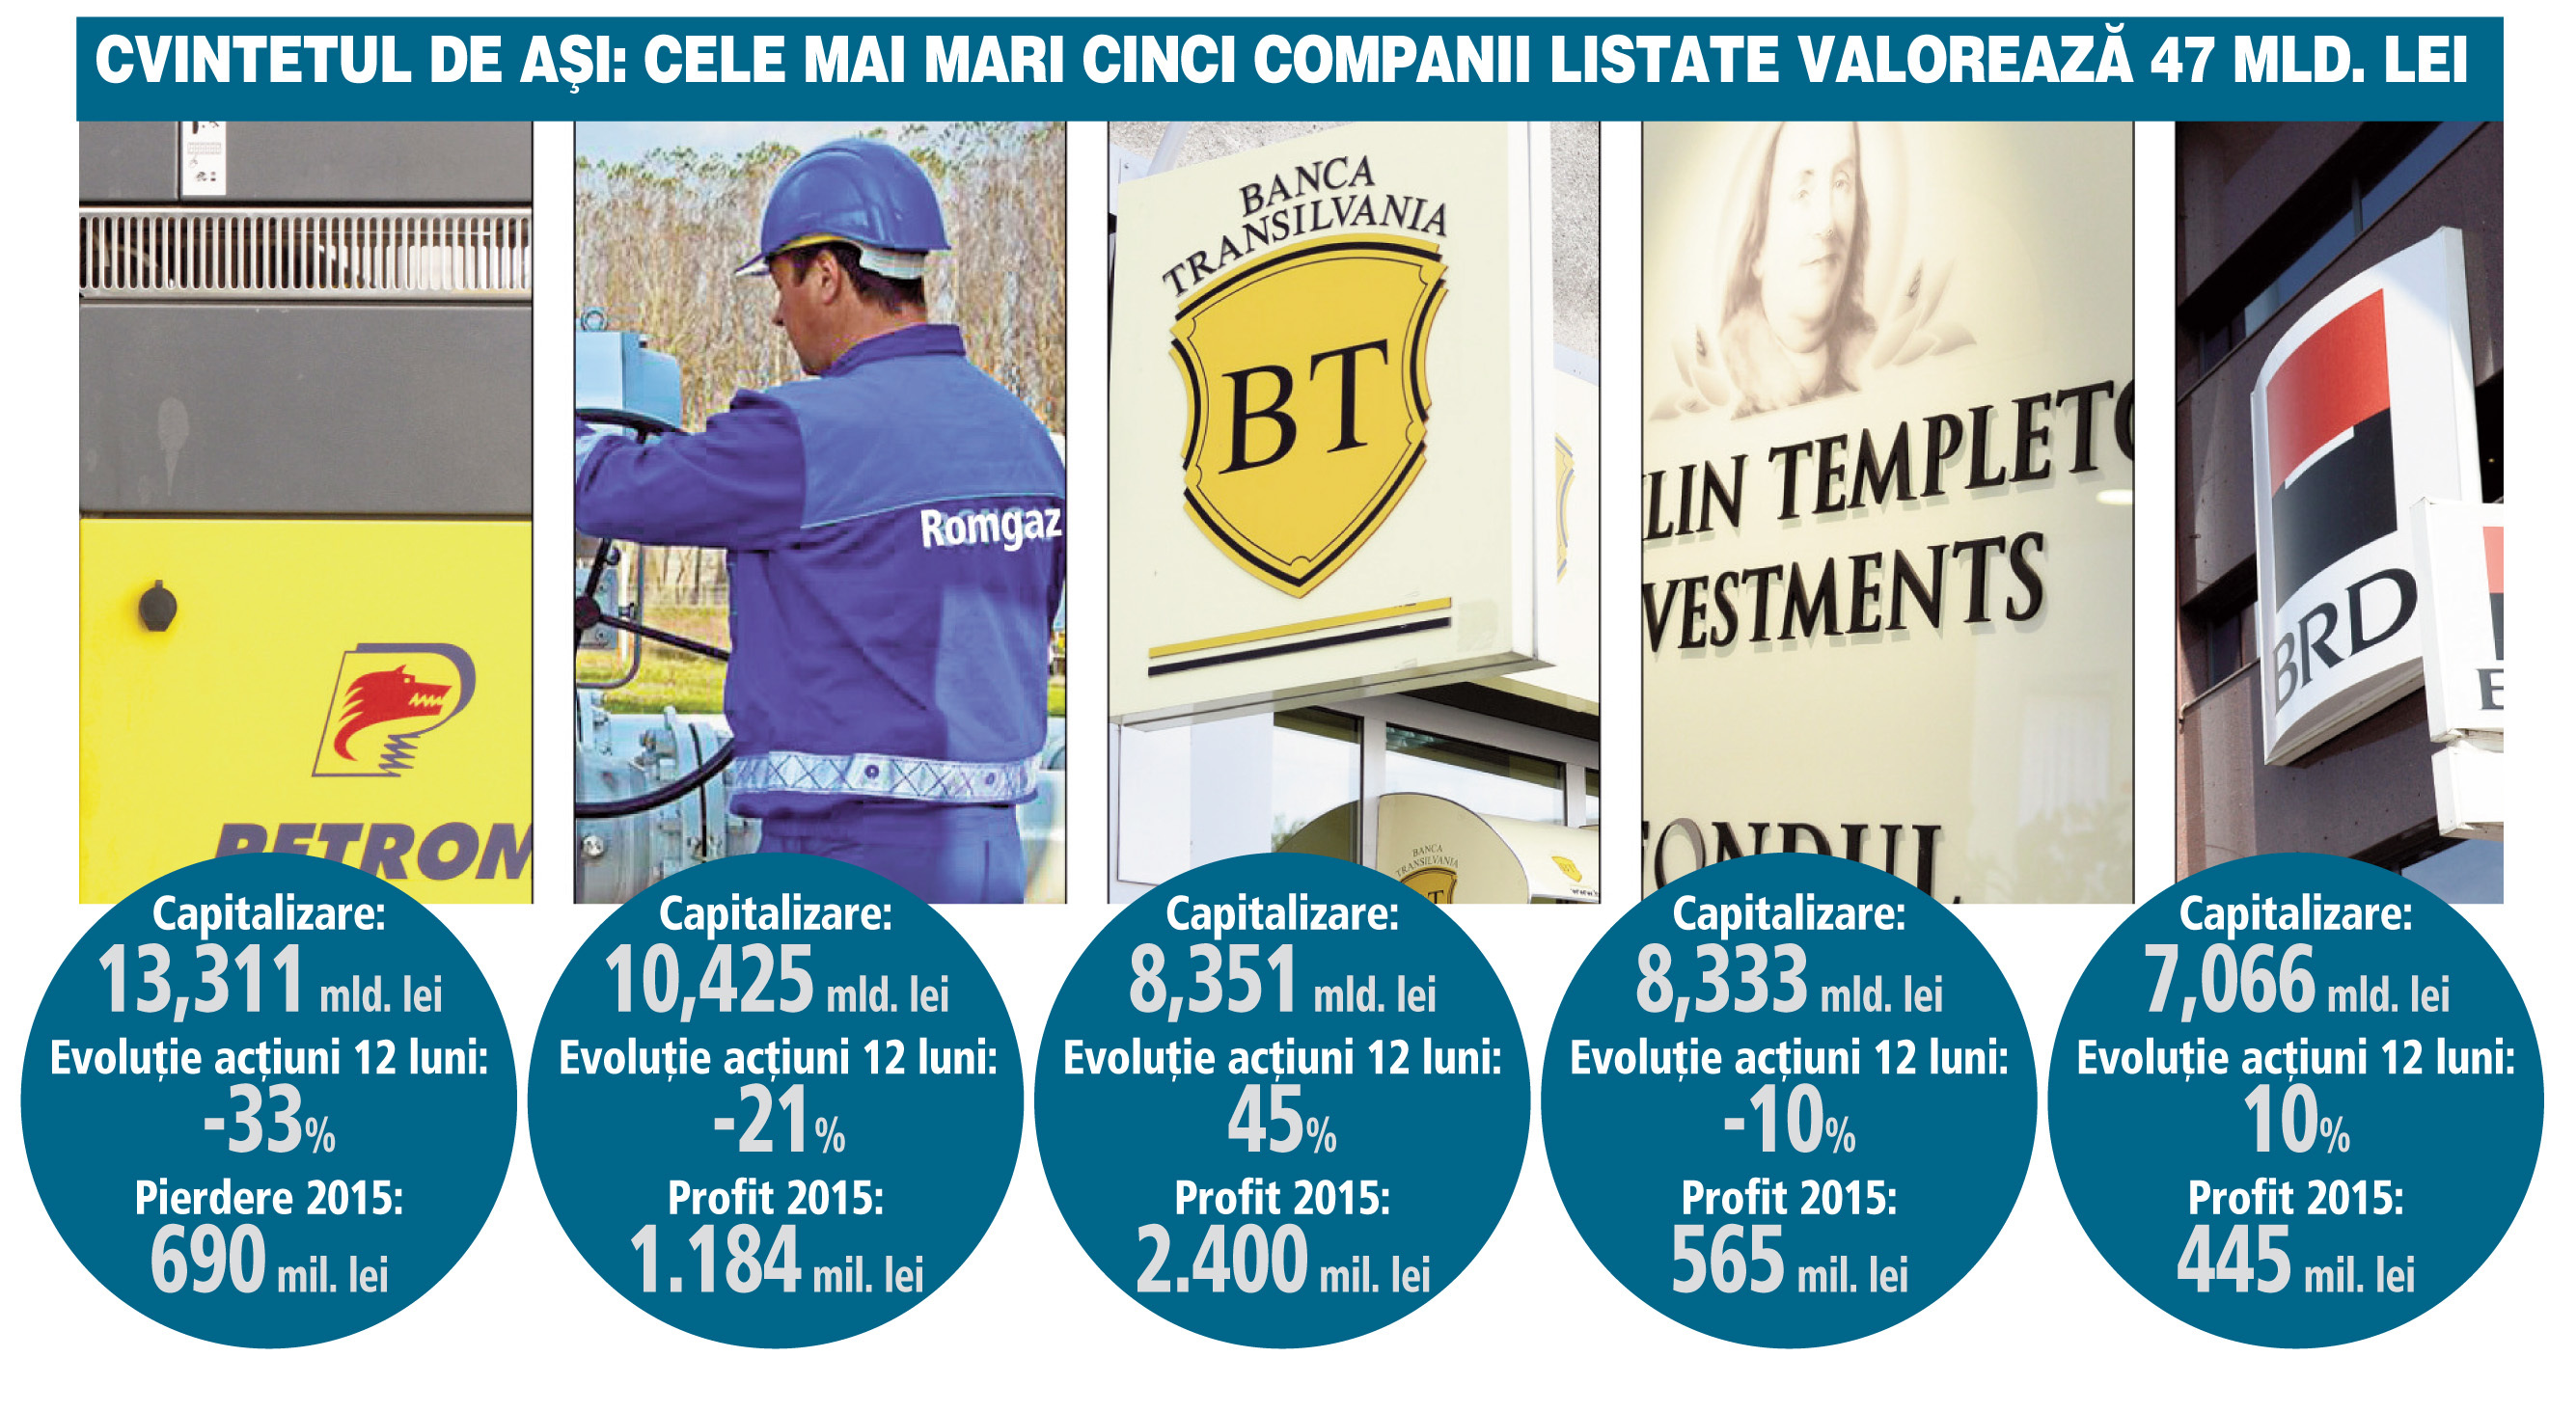 Banca Transilvania a detronat Fondul Proprietatea în topul celor mai valoroase companii listate